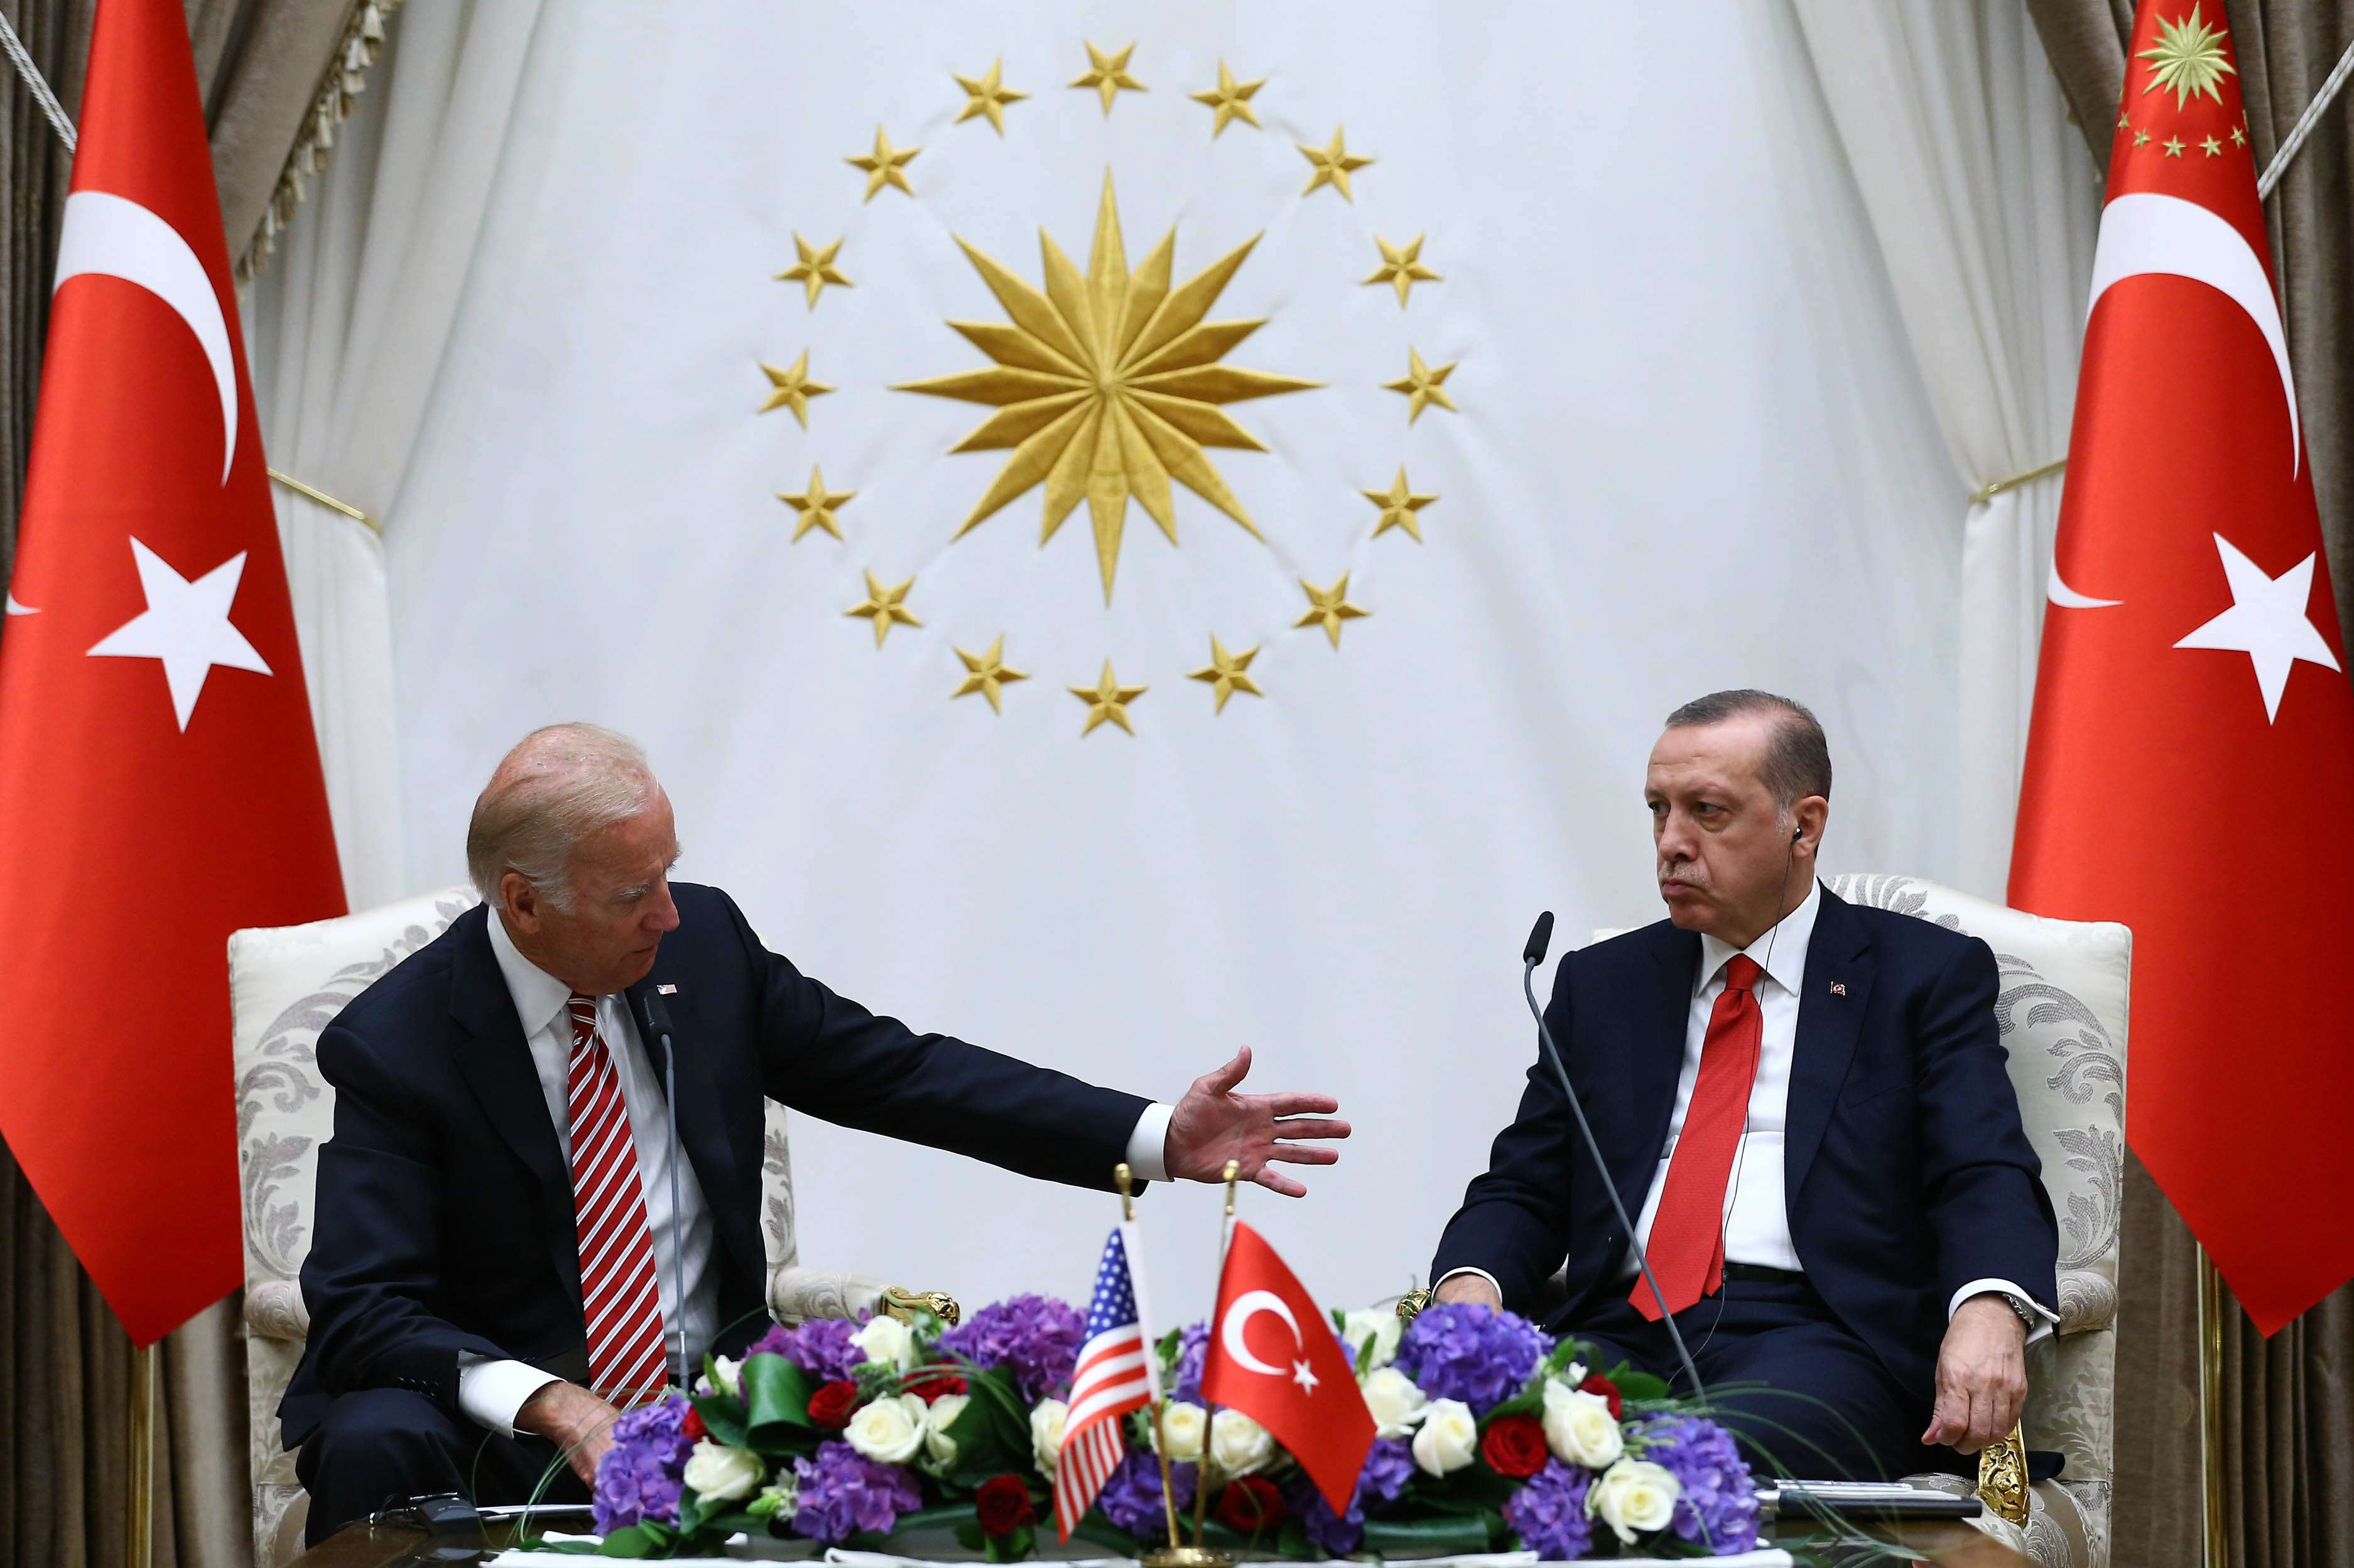 لقاء بين اردوغان وبايدن عام 2016